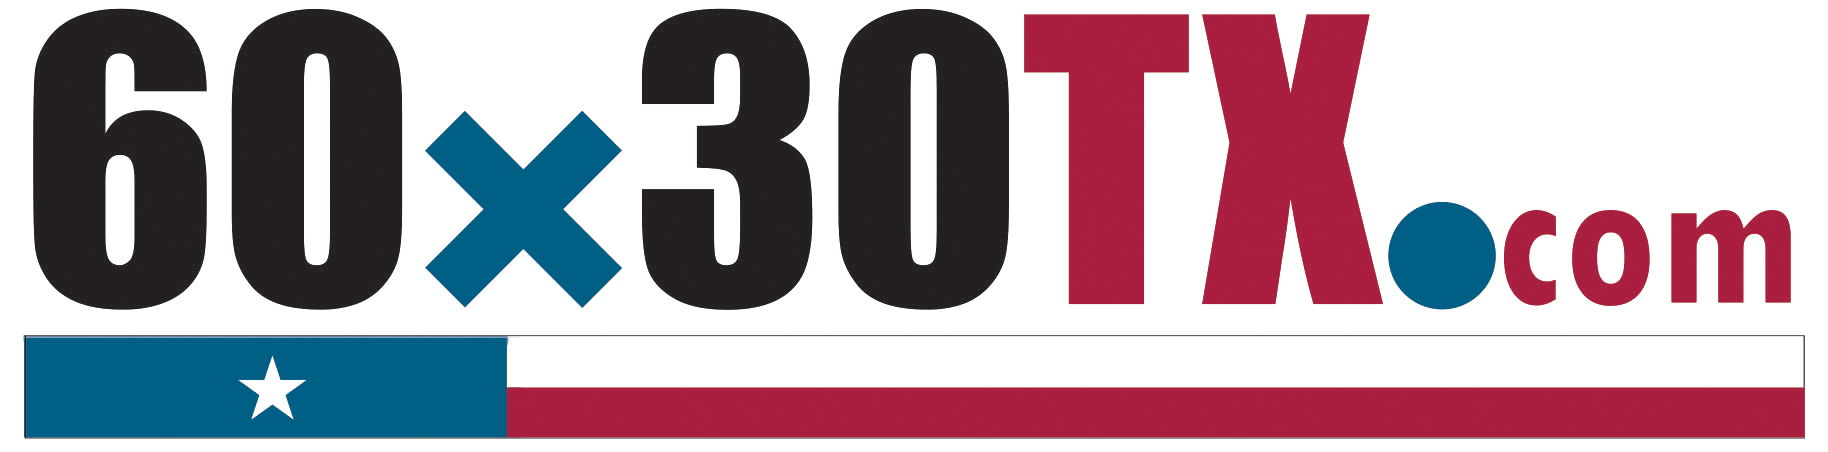 60 X 30 logo.png